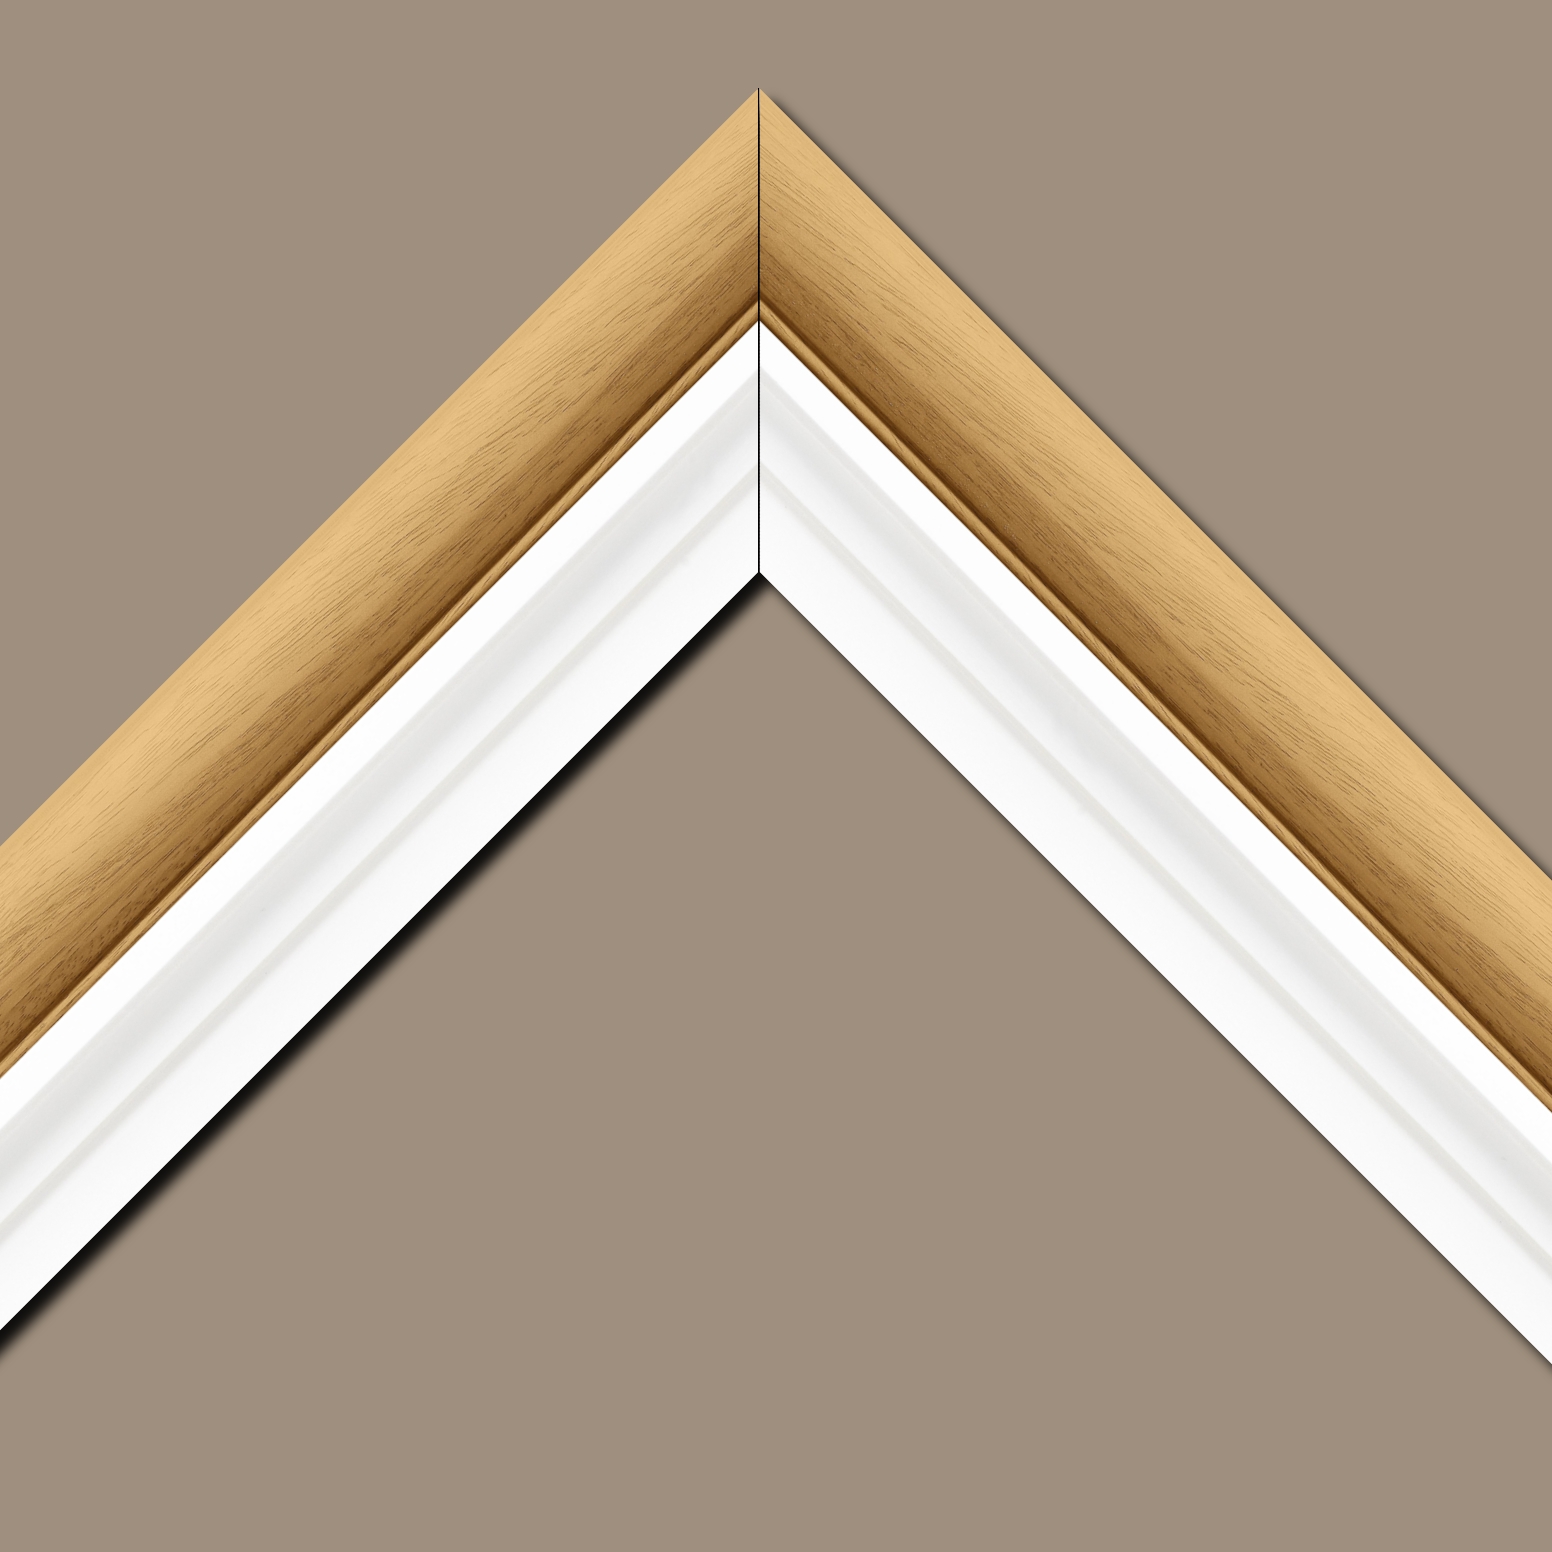 Baguette bois profil arrondi largeur 4.7cm couleur naturel satiné  + bois caisse américaine profil escalier largeur 4.4cm blanc mat   (spécialement conçu pour les châssis d'une épaisseur jusqu’à 2.5cm ) largeur total du cadre : 8.3cm